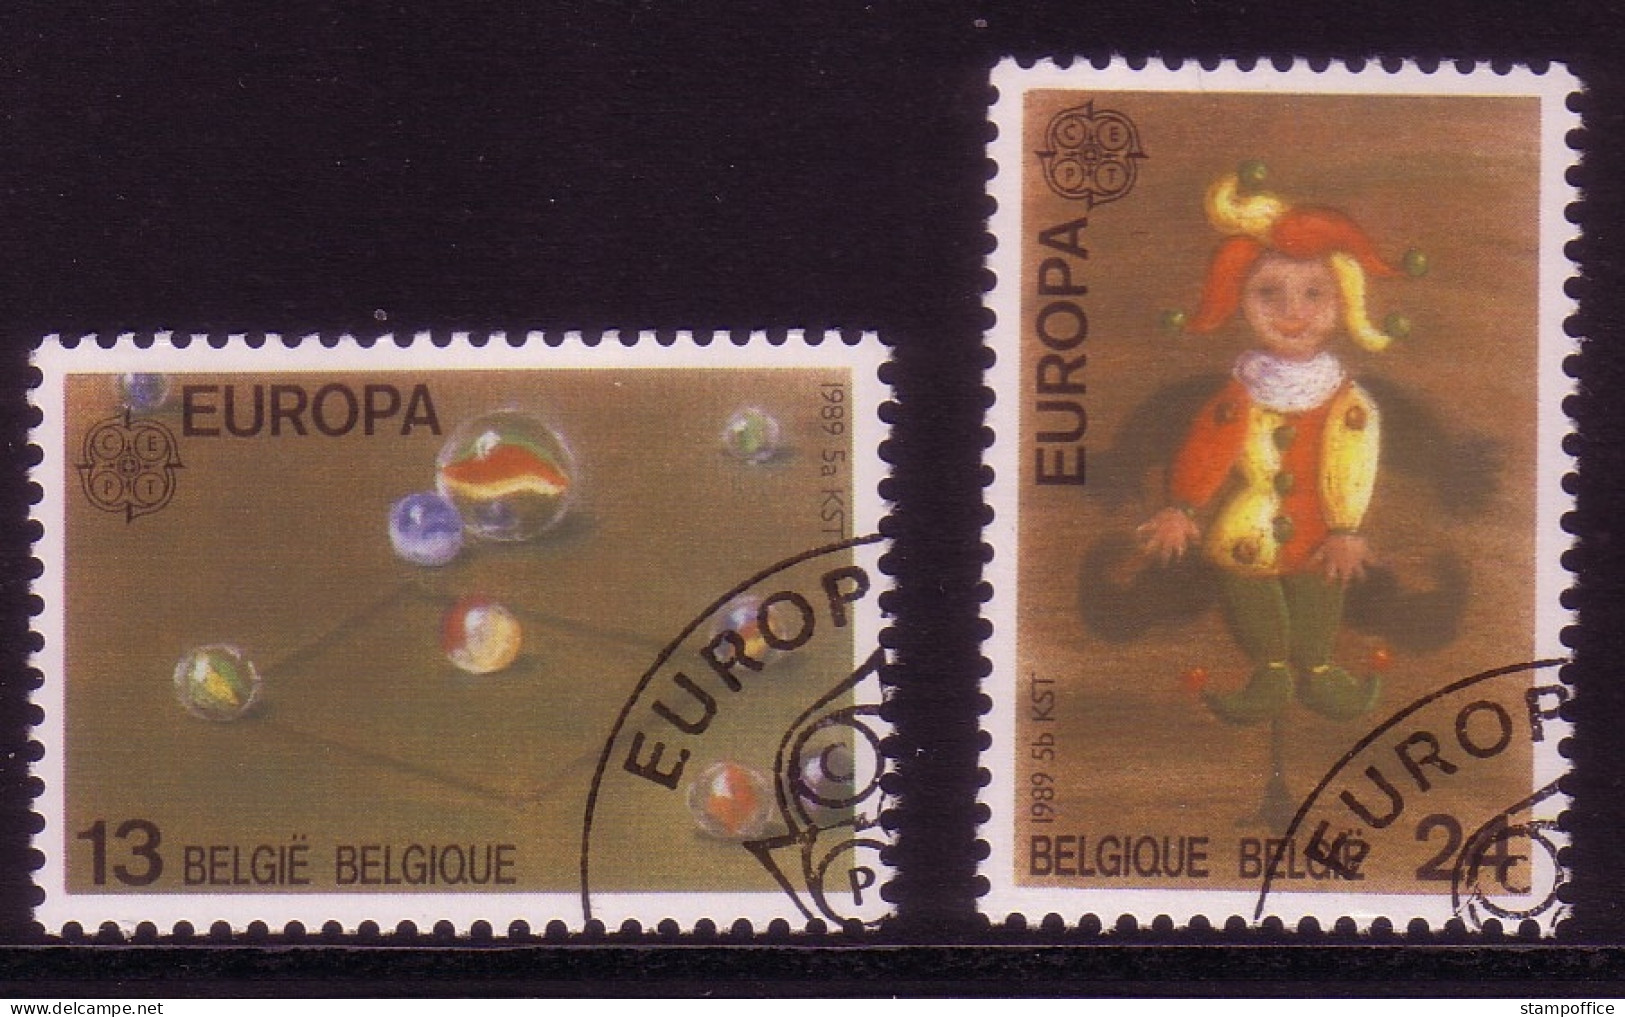 BELGIEN MI-NR. 2375-2376 O EUROPA 1989 - KINDERSPIELE - 1989